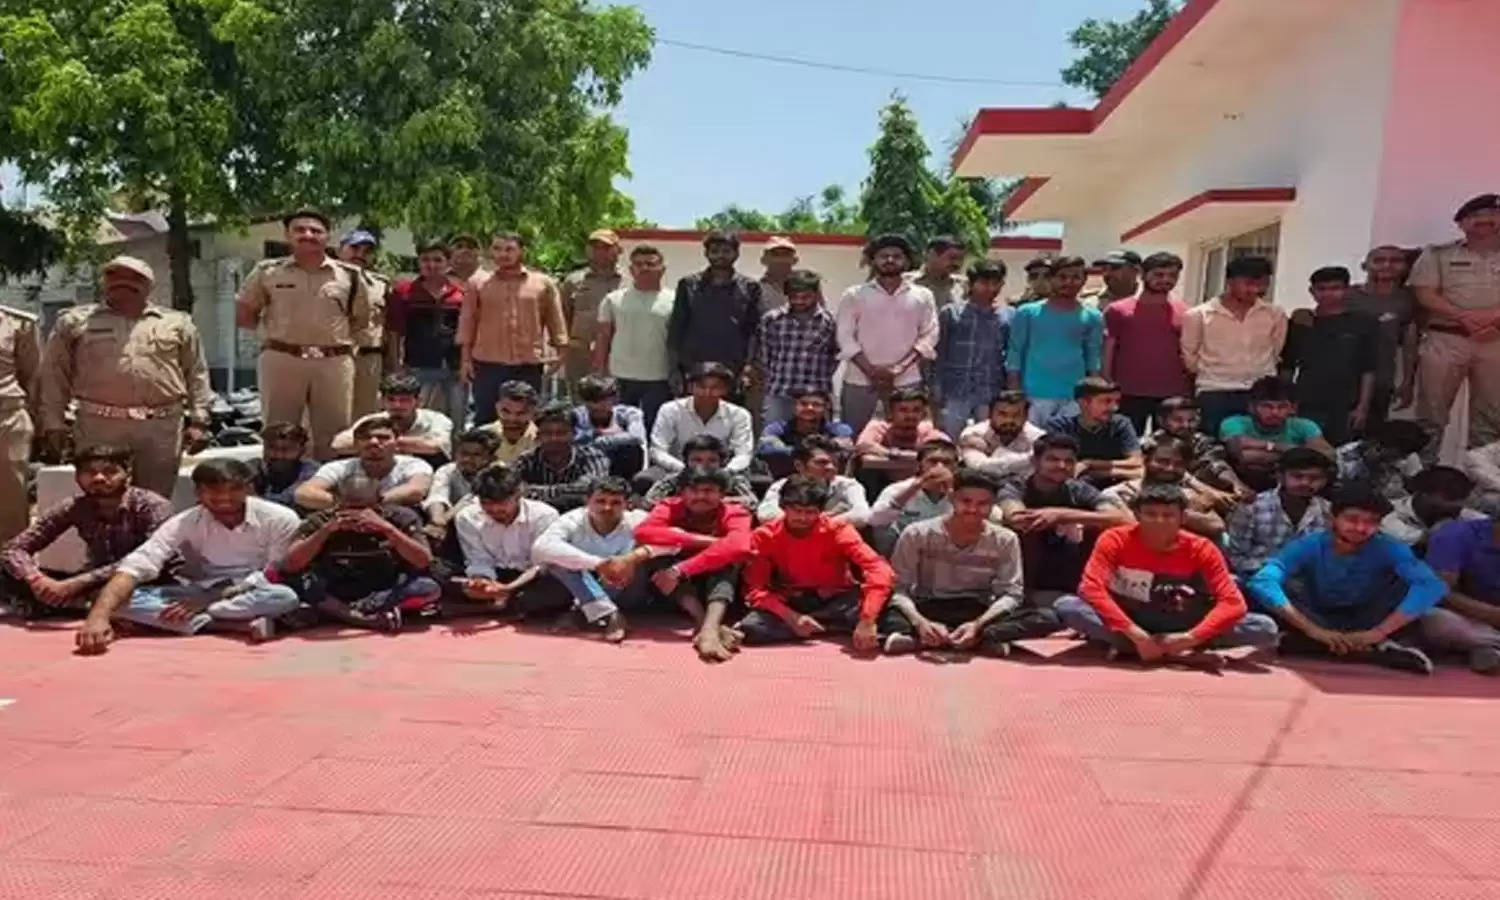  Haridwar : सिडकुल थाना क्षेत्र के मीनाक्षीपुरम में एक कंप्यूटर सेंटर में हुई तोड़फोड़, 49 गिरफ्तार